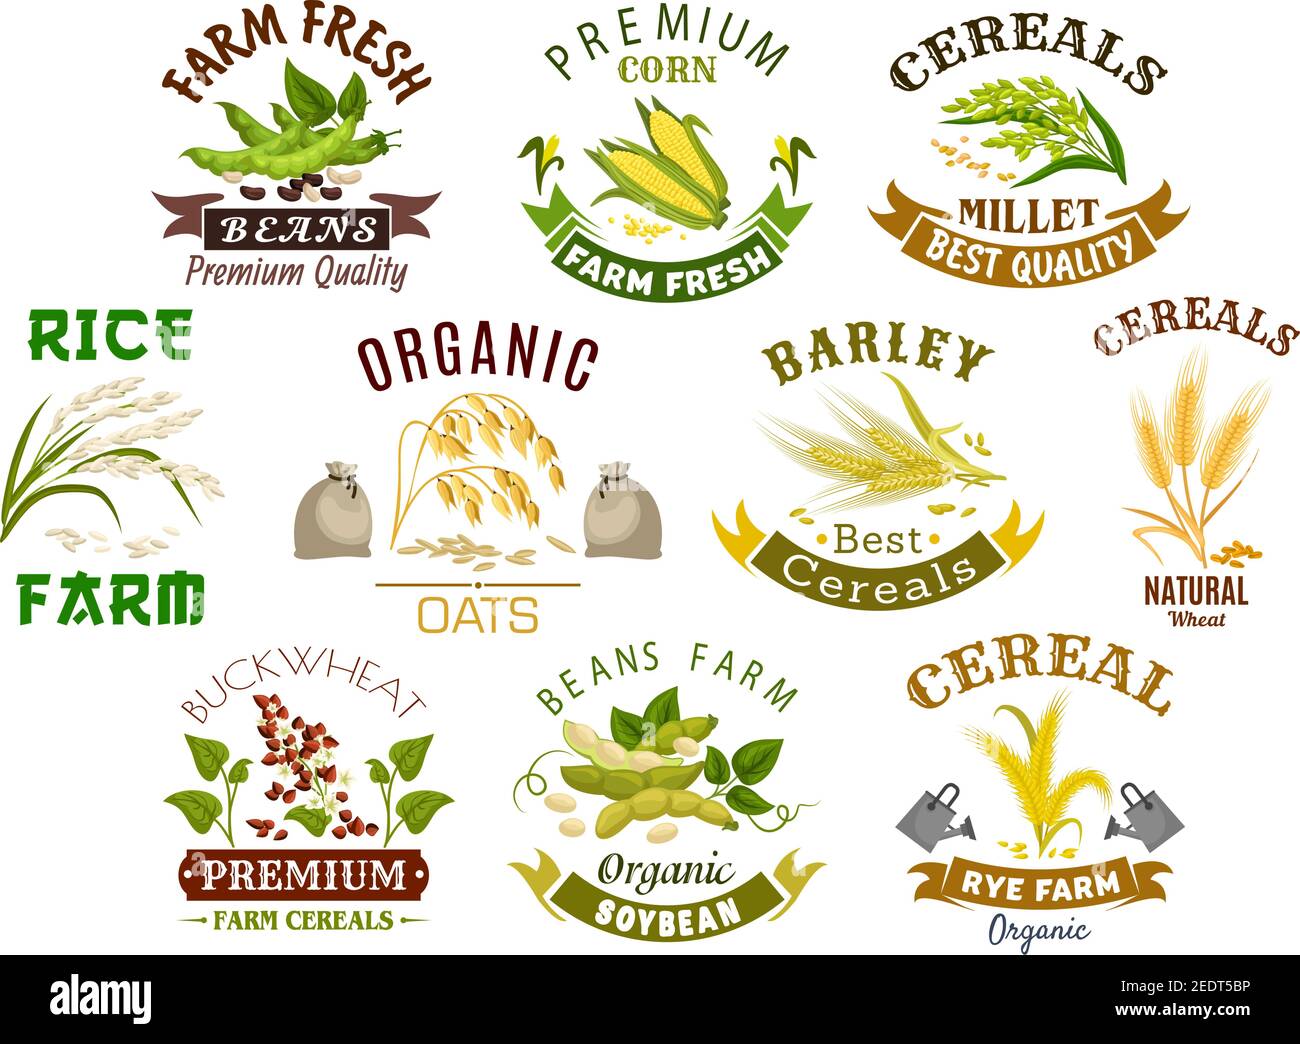 Symbole für Getreideprodukte. Vektor-Symbole von Weizenmehl Beutel, Roggen-Ohren und Getreide, Buchweizen Samen und Hafer oder Gerste Hirse und Reis Garbe. Isoliert agricul Stock Vektor